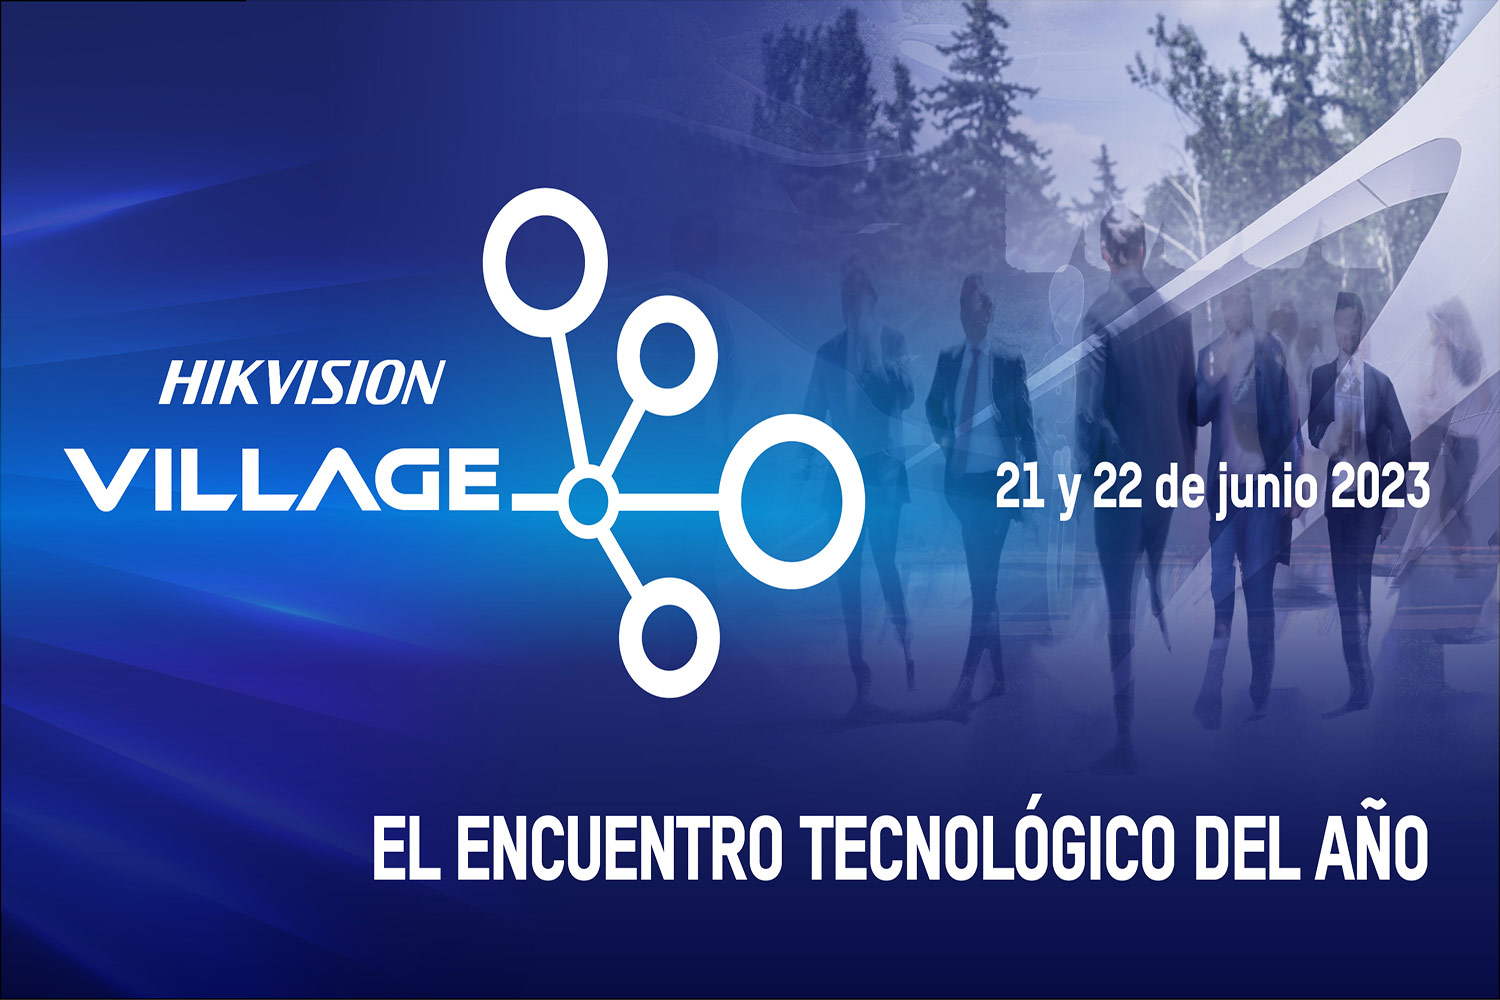 Hikvision Village: el encuentro tecnológico del año sobre ‘El futuro la tecnología y seguridad’.